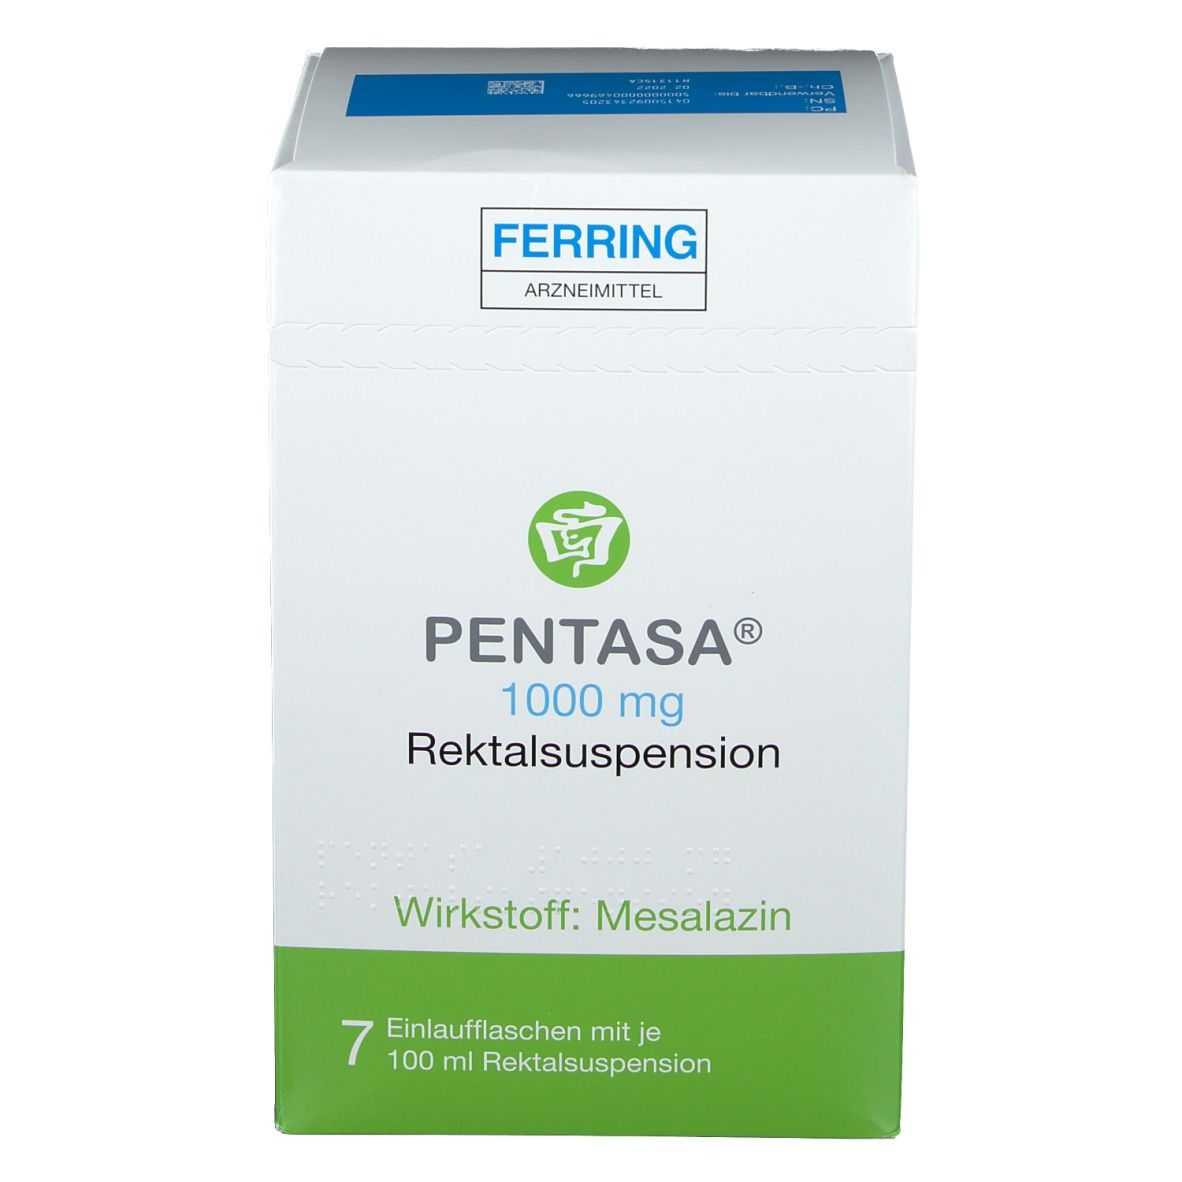 PENTASA® 1000 mg